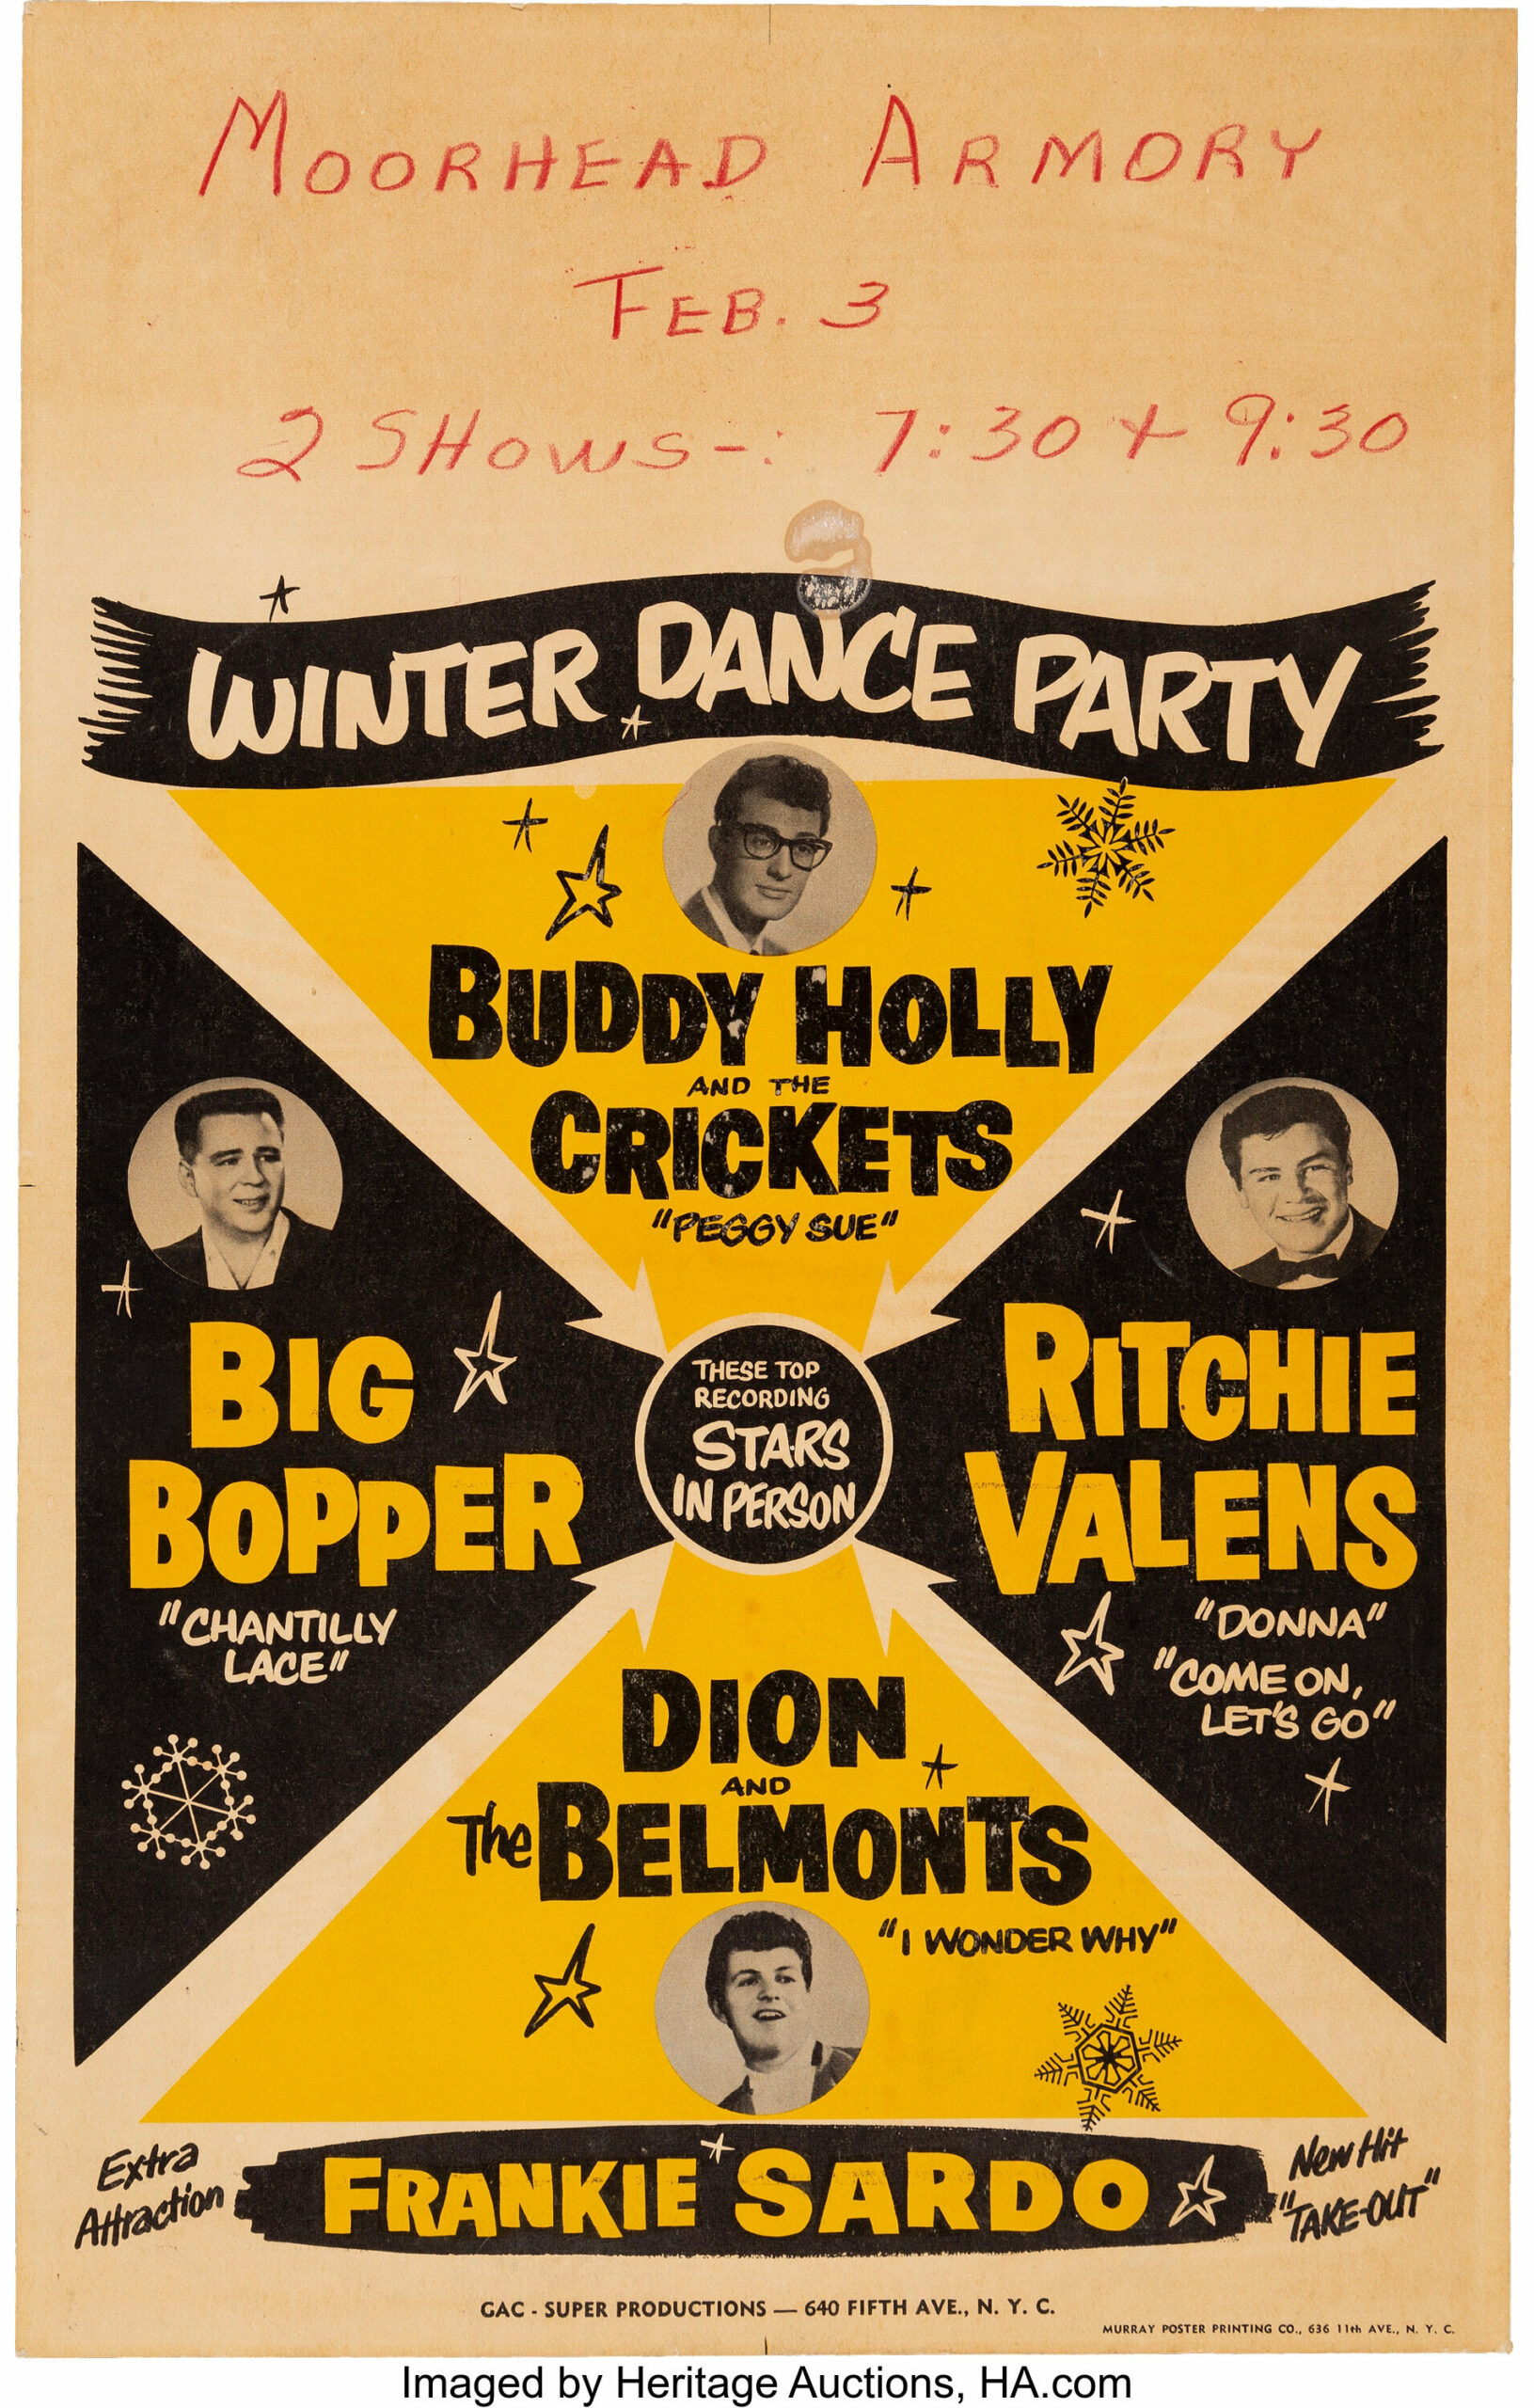 Konzertposter gelb schwarz mit Buddy Holly